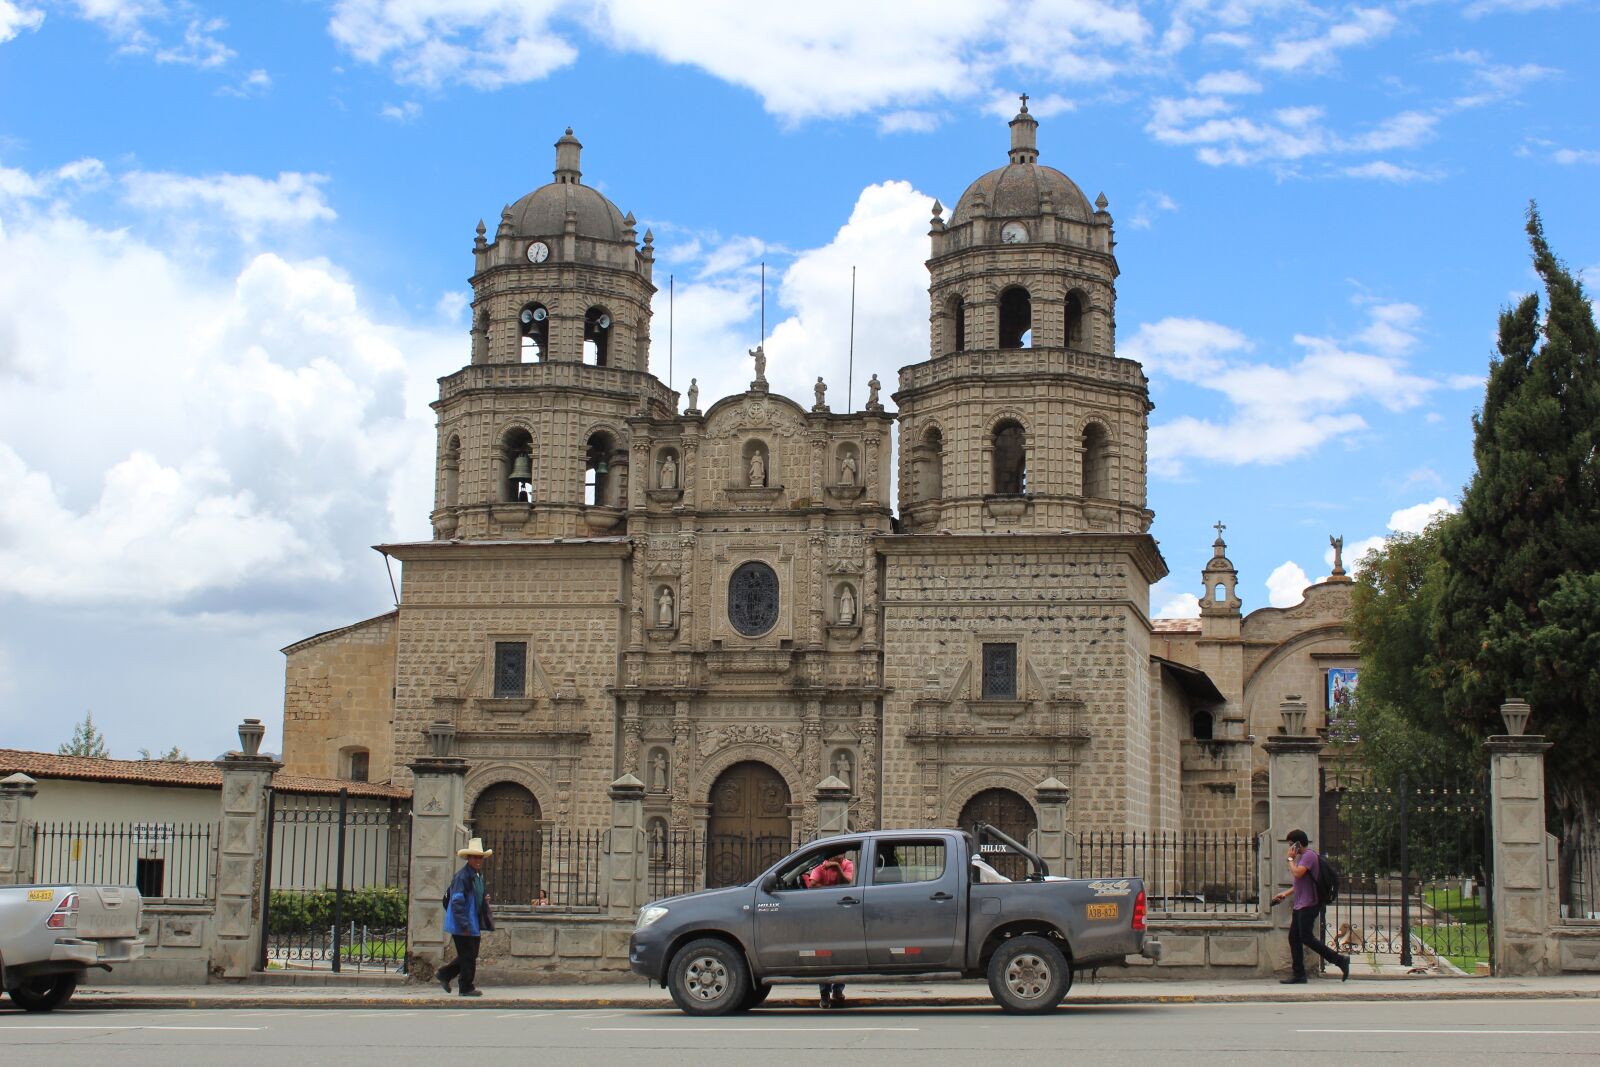 Canon EOS 1300D (EOS Rebel T6 / EOS Kiss X80) sample photo. Church, cajamarca, peru photography